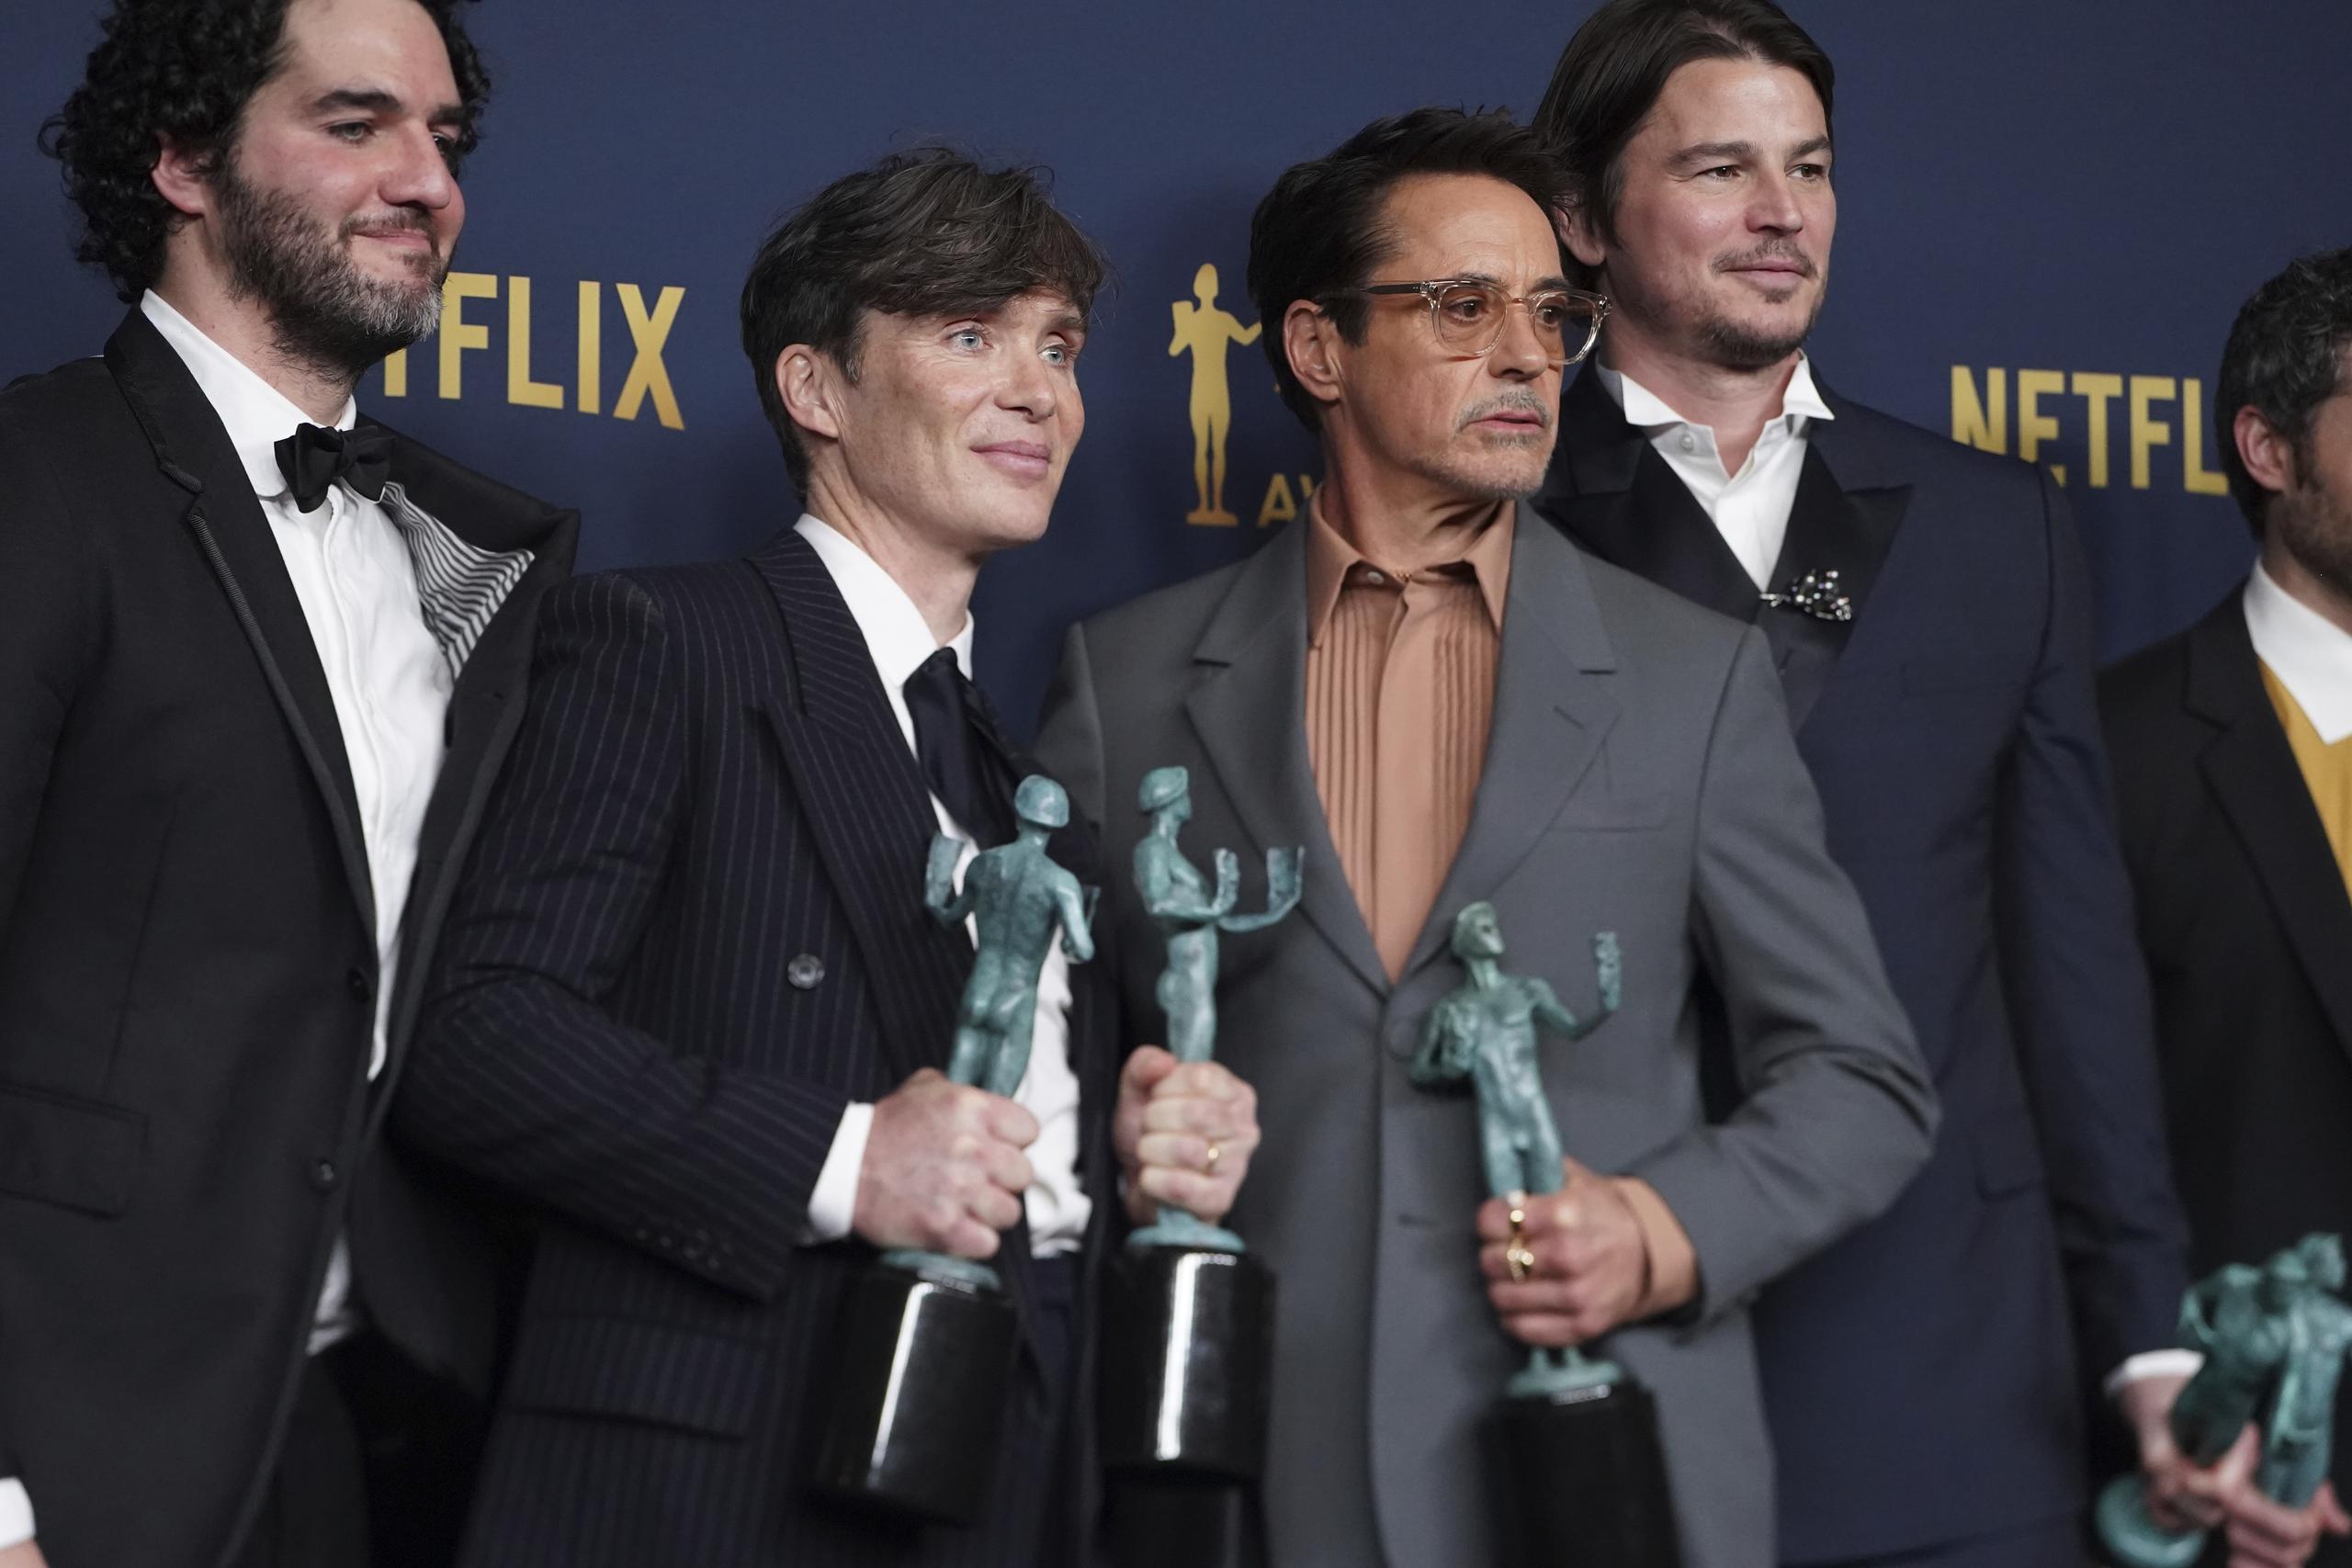 Benny Safdie, Cillian Murphy, Robert Downey Jr., y Josh Hartnett recibieron los galardones otorgados al filme "Oppenheimer" durante ka gala celebrada el sábado.